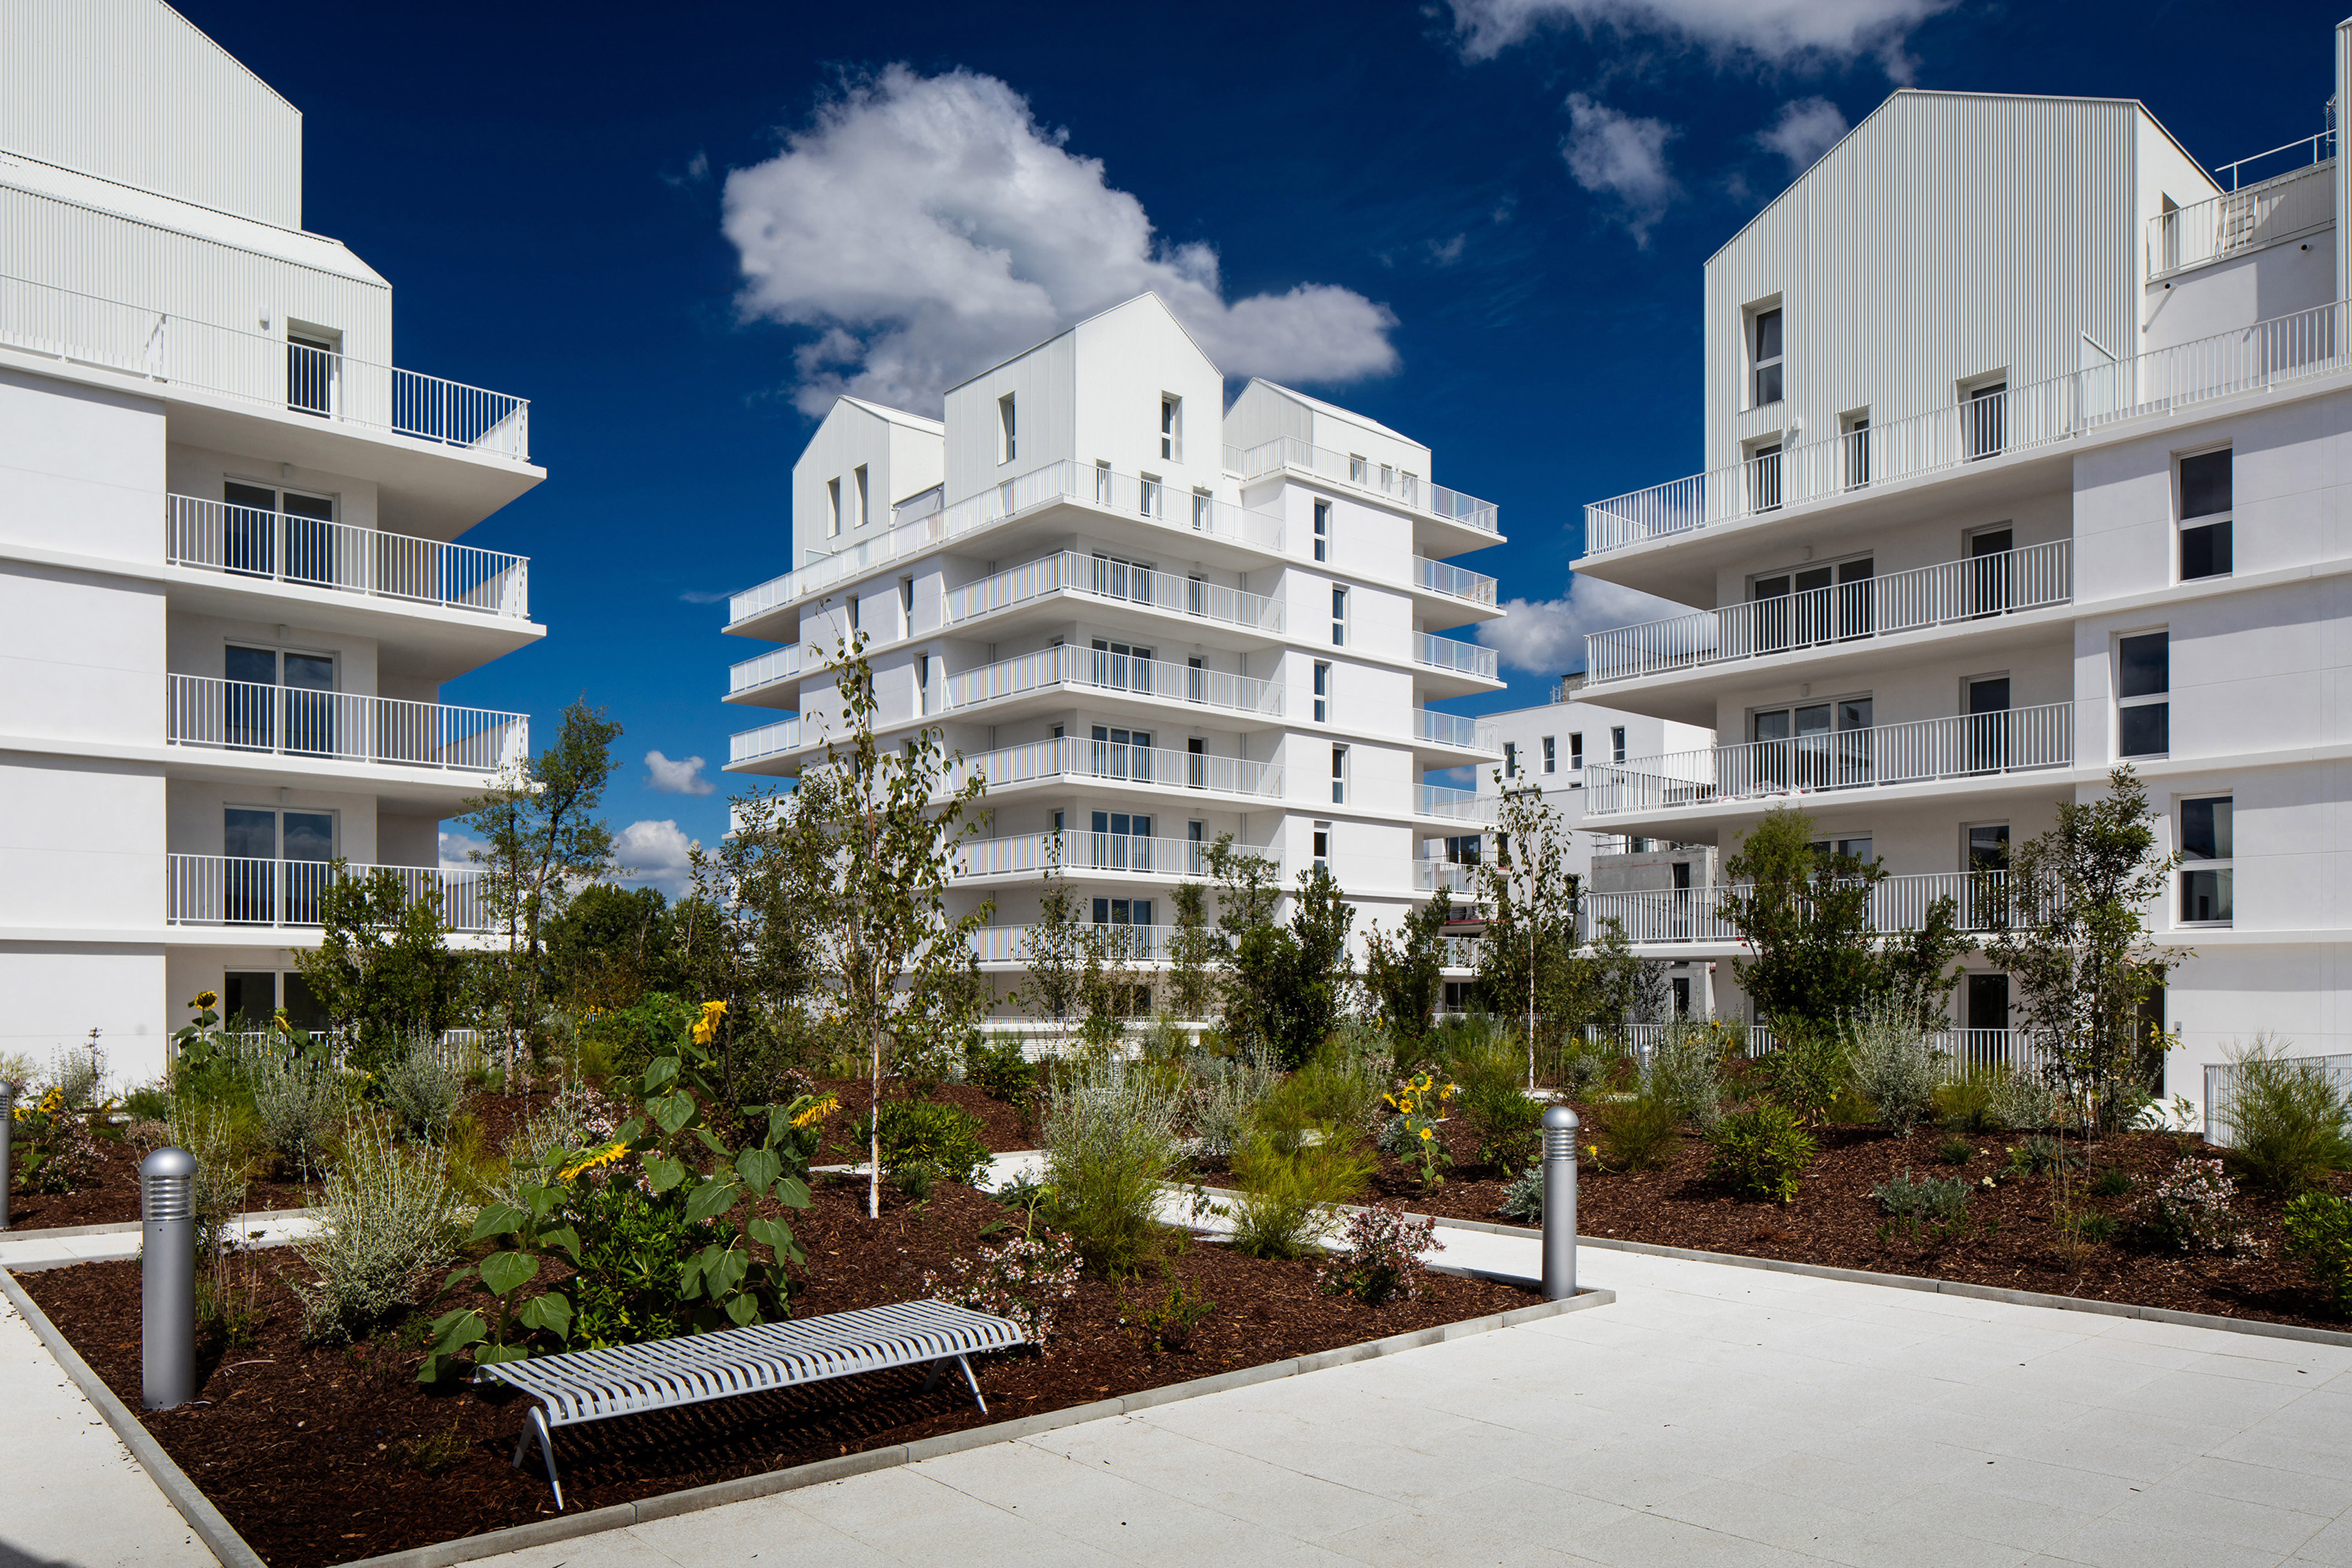 Gabled penthouses sit atop apartment blocks at Bordeaux housing scheme